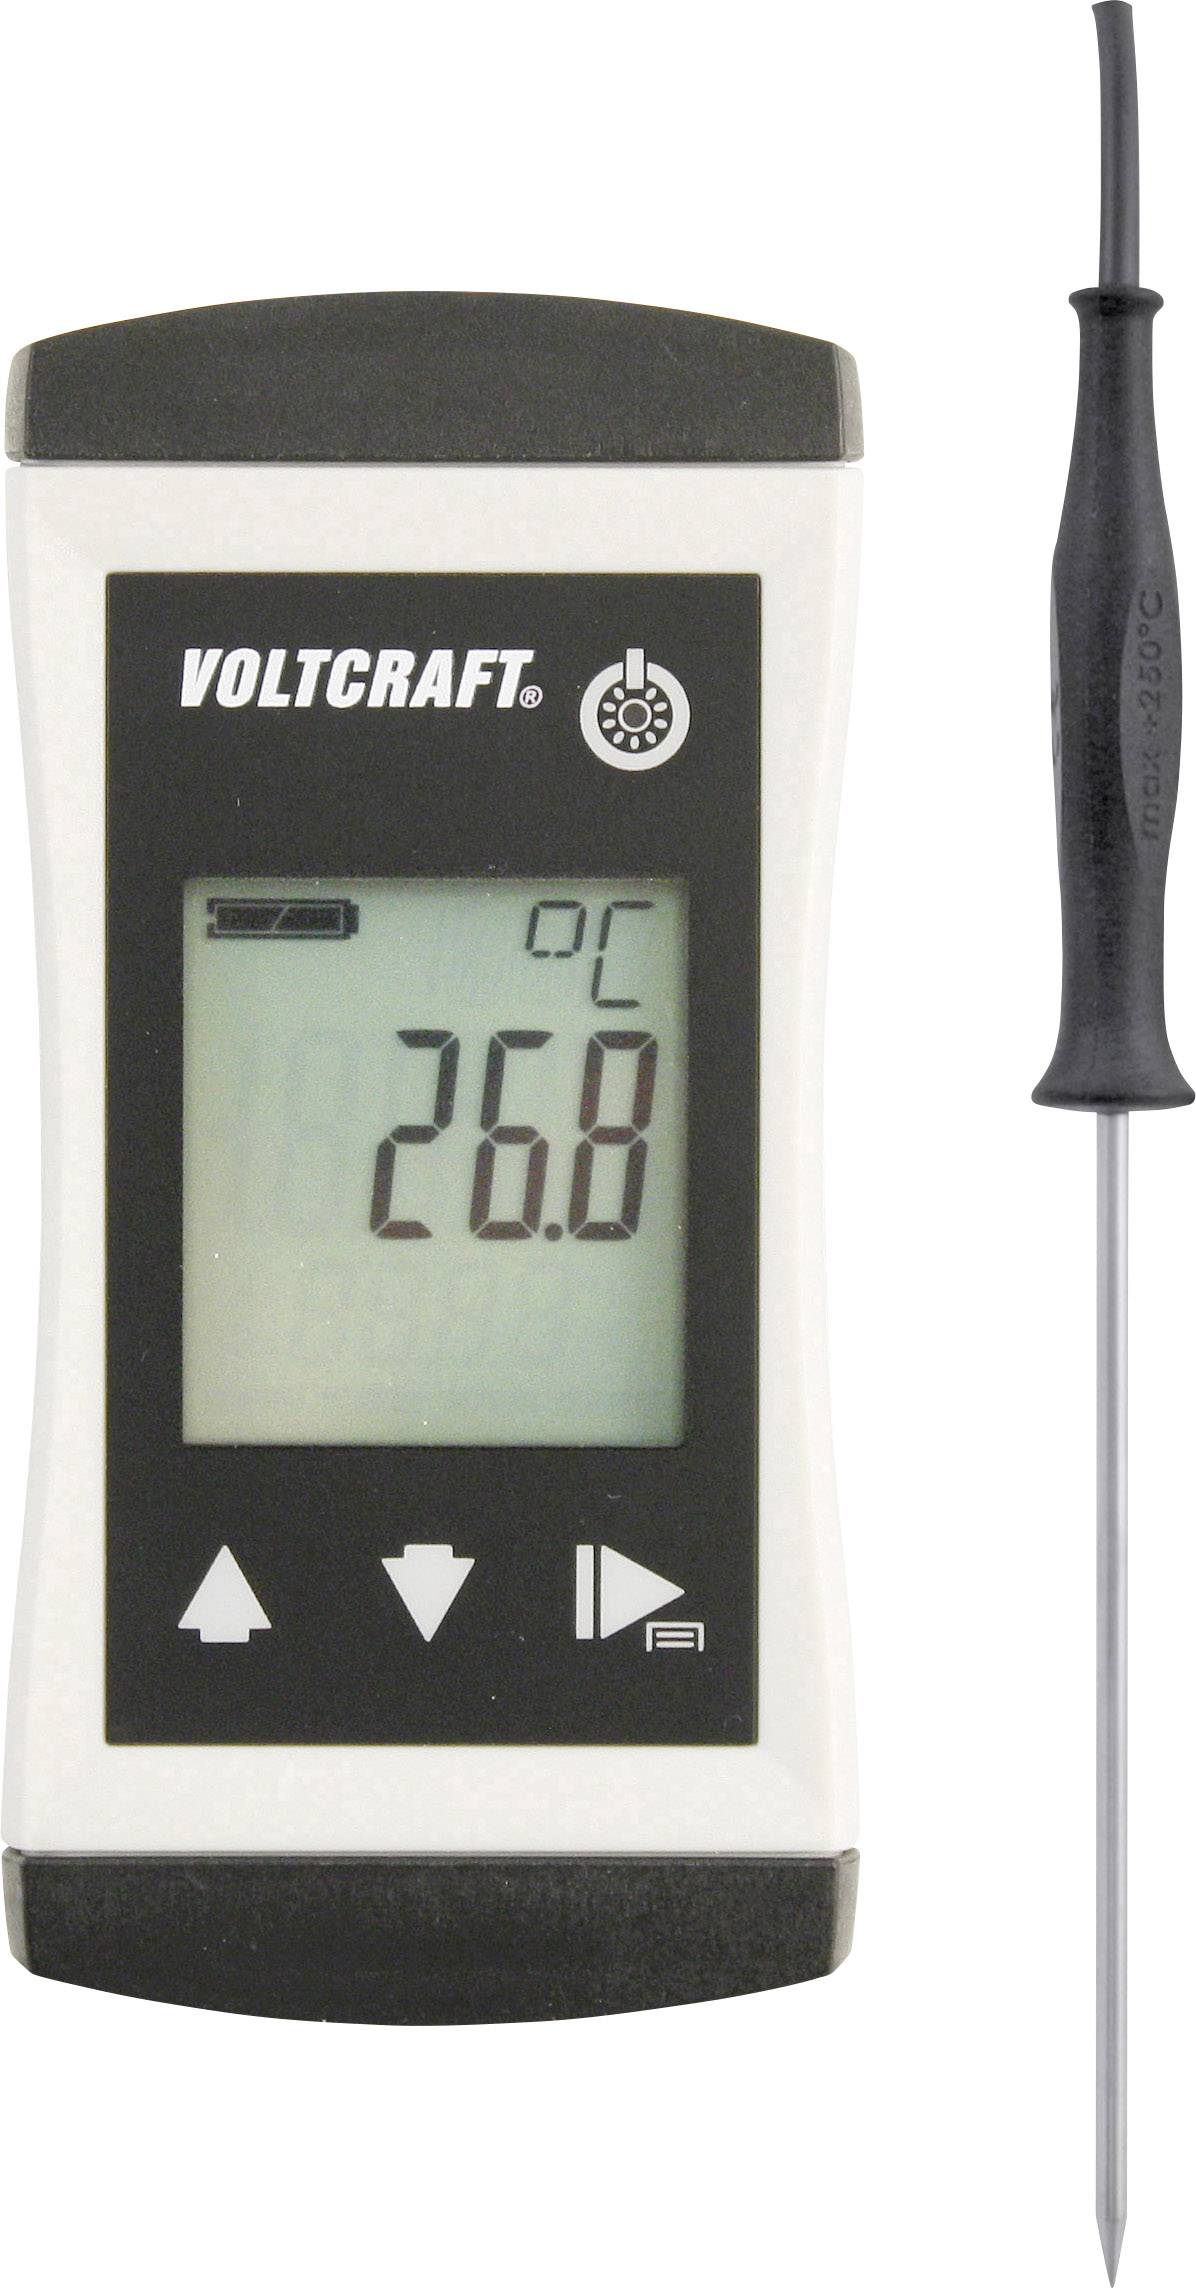 VOLTCRAFT PTM-120 Temperatur-Messgerät -70 bis 250 °C Fühler-Typ Pt1000 IP65